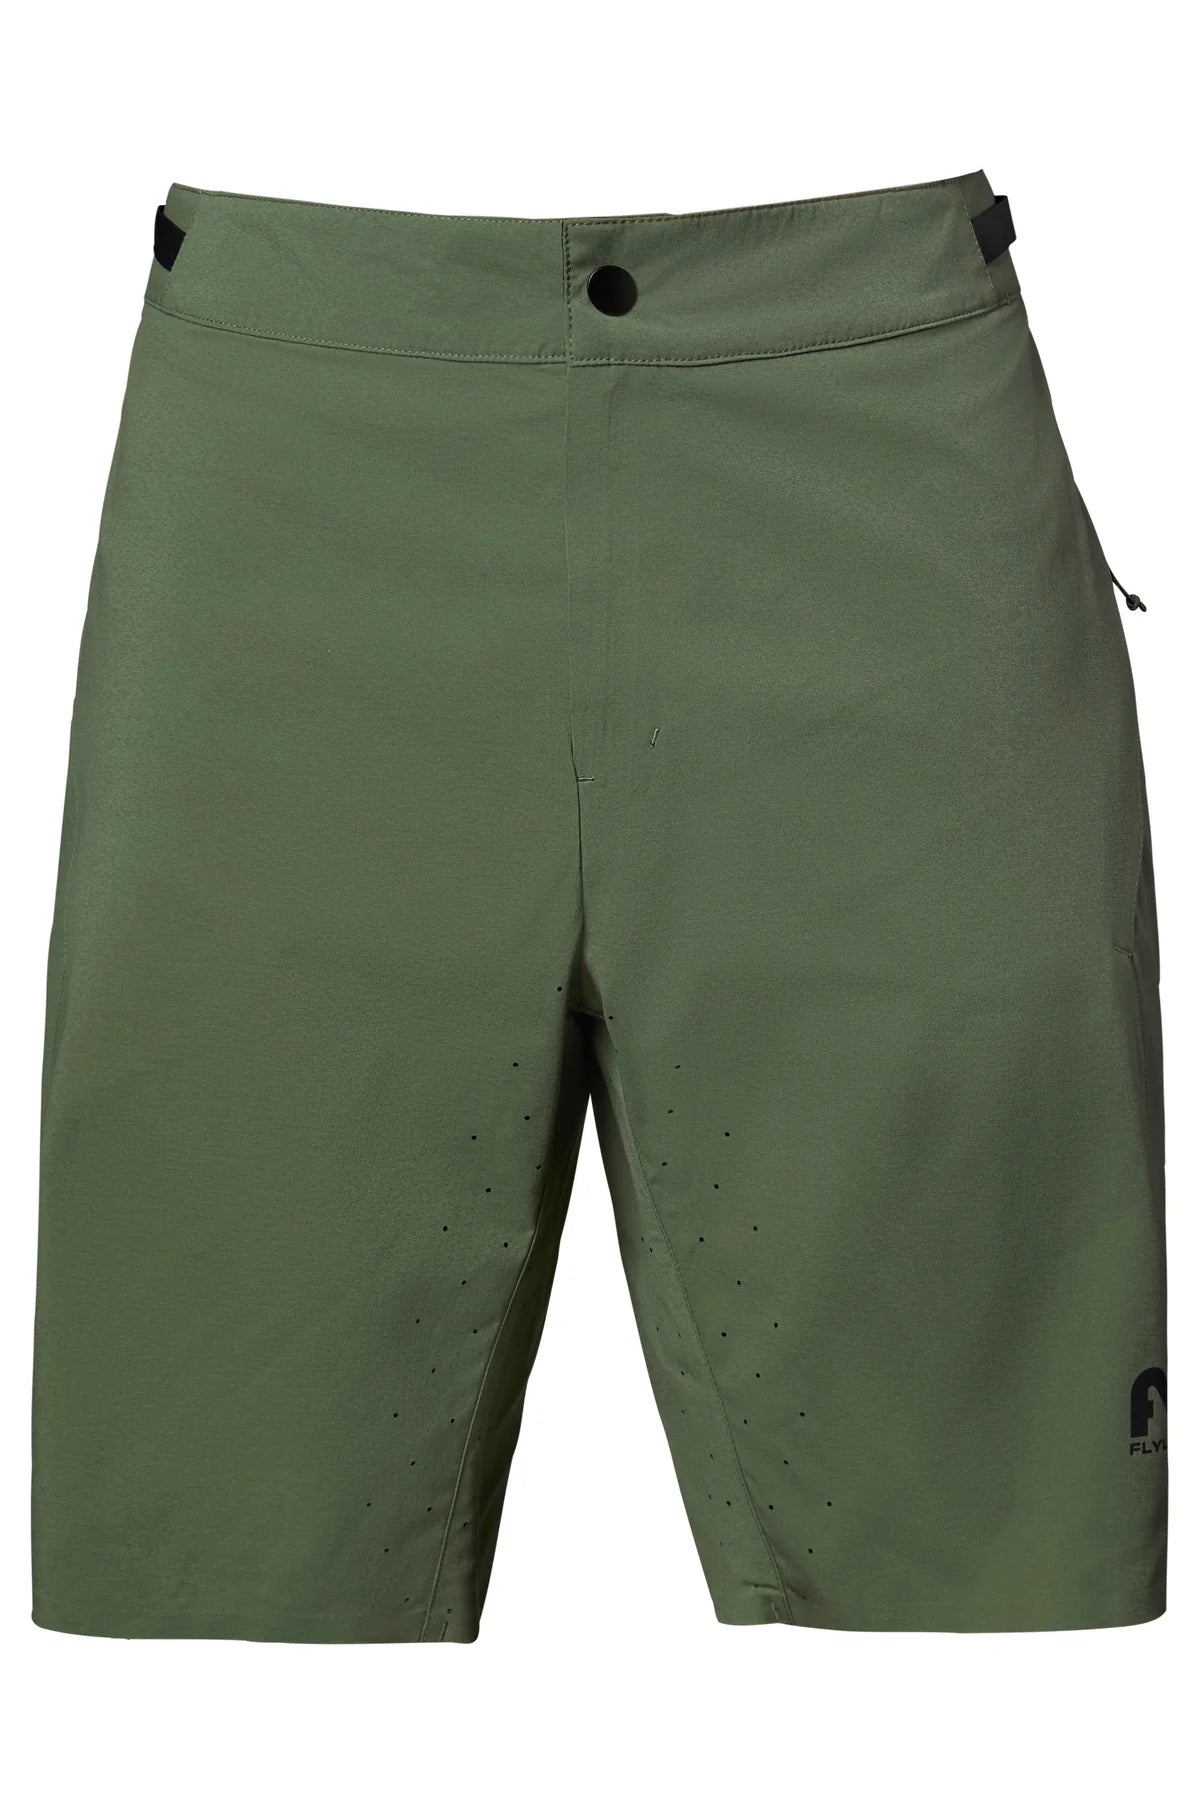 Flylow Laser Short - Men's shorts Boa green